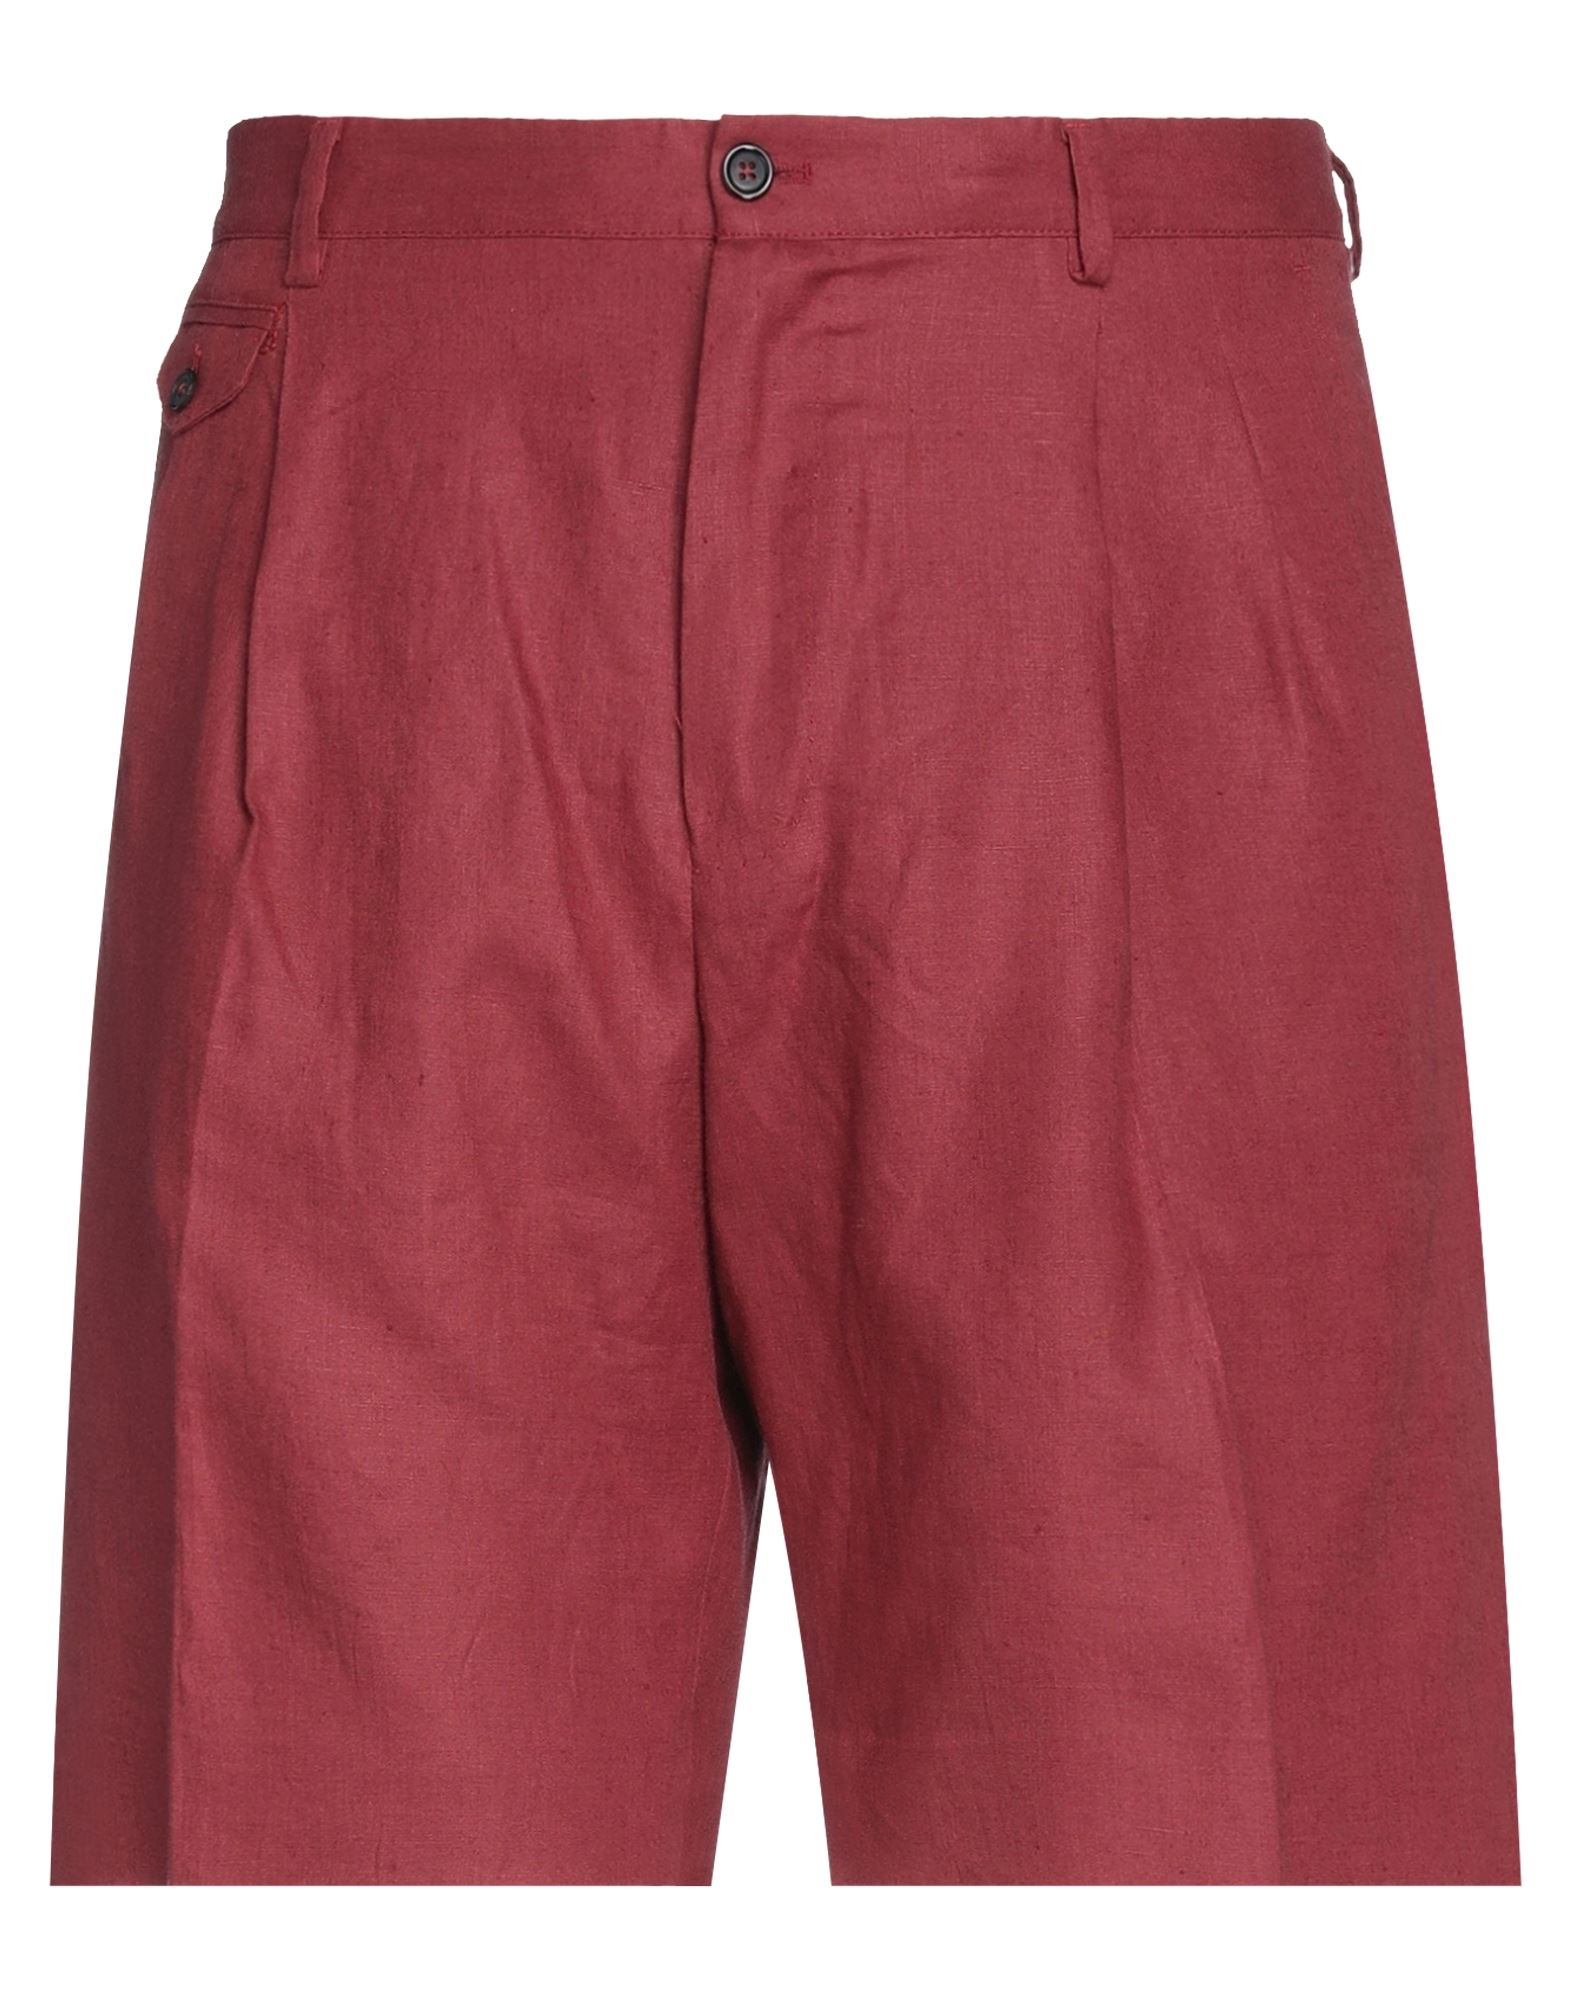 Dolce & Gabbana Man Shorts & Bermuda Shorts Brick Red Size 28 Linen